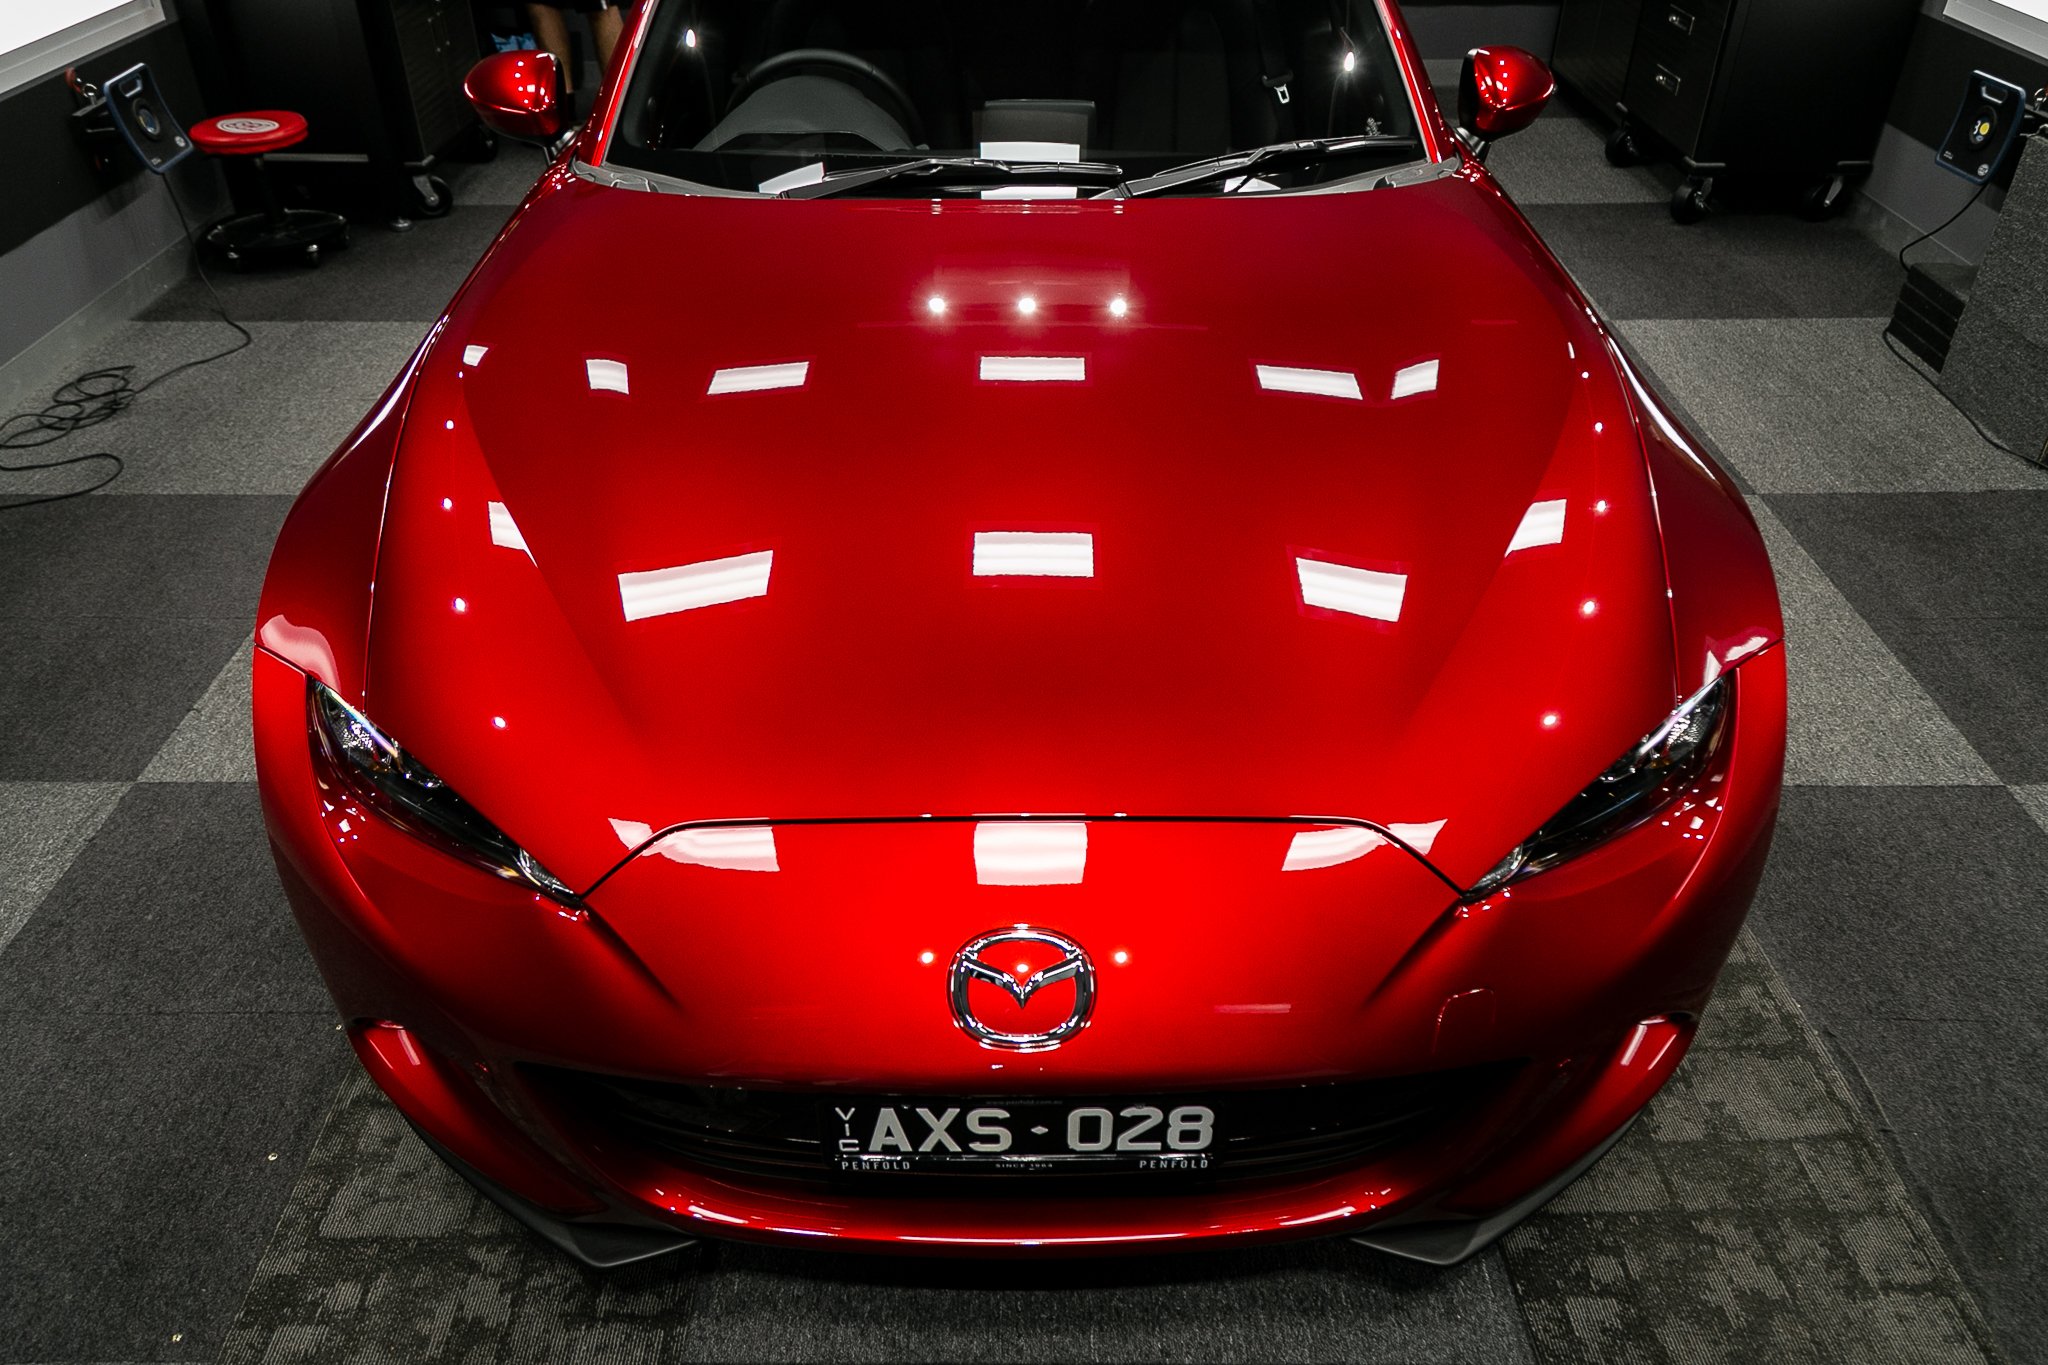 Red mazda. Мазда 46v Red Soul. Мазда Soul Red Crystal. Mazda Candy Red. Mazda 46v красный.